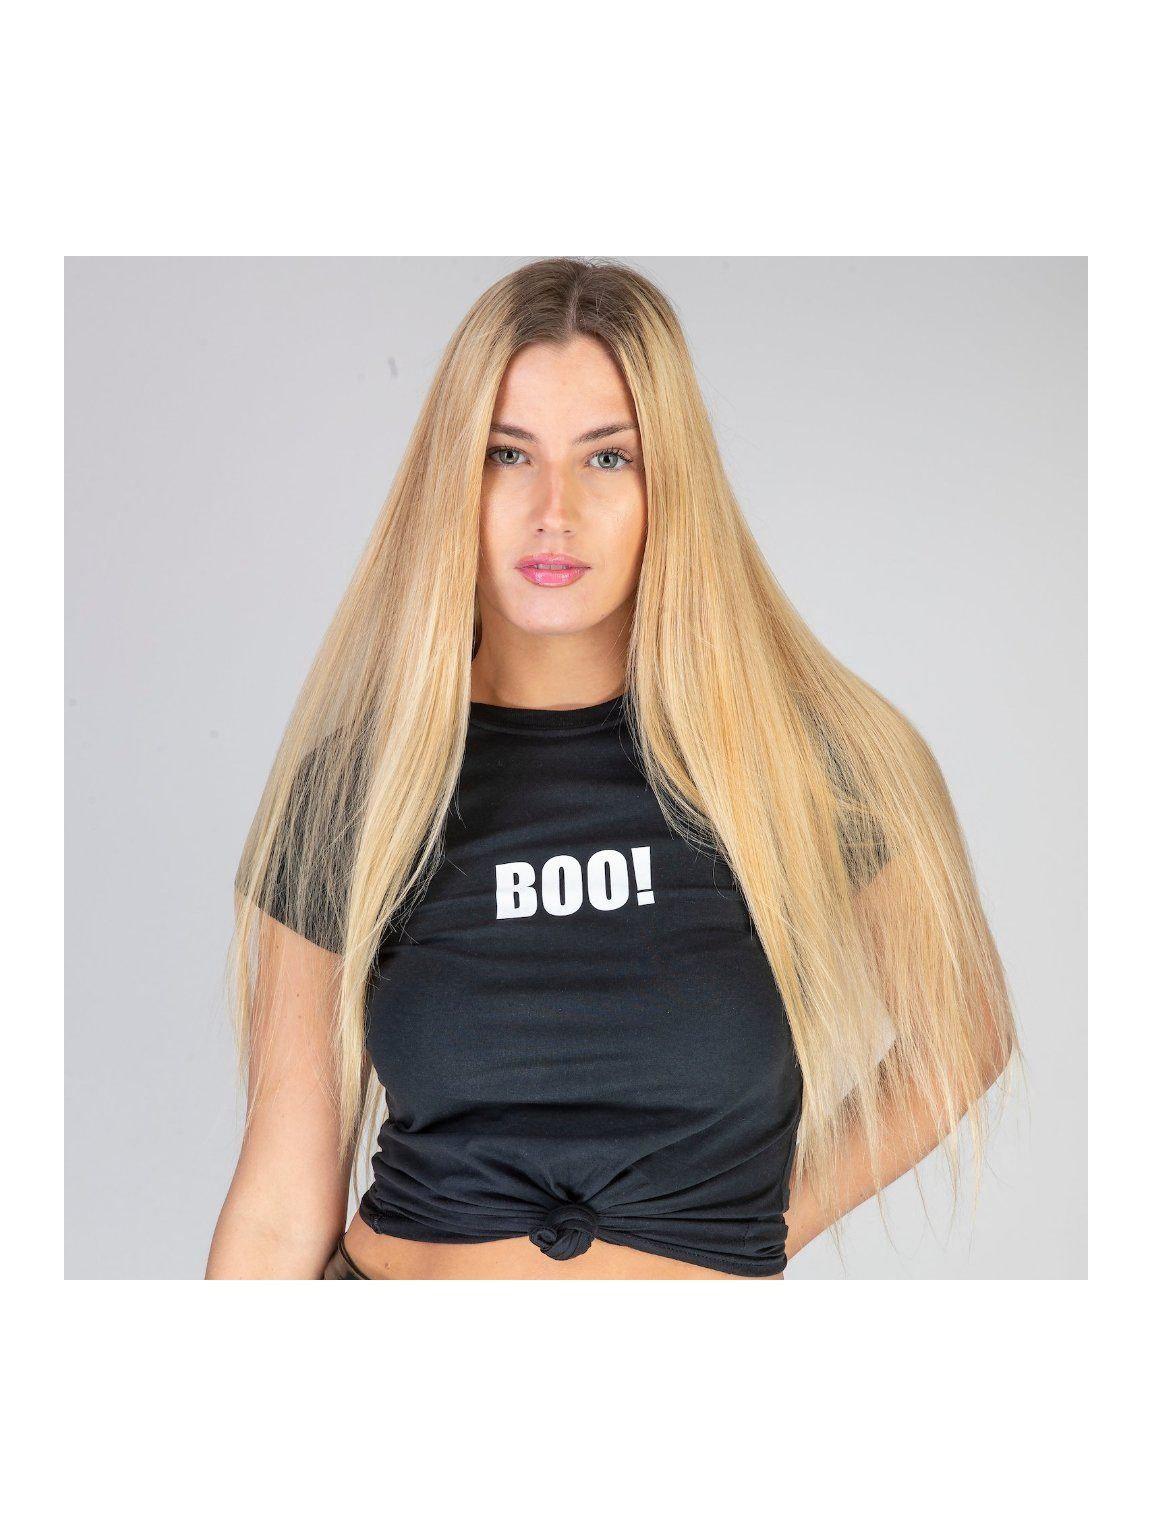 BOO! t shirt